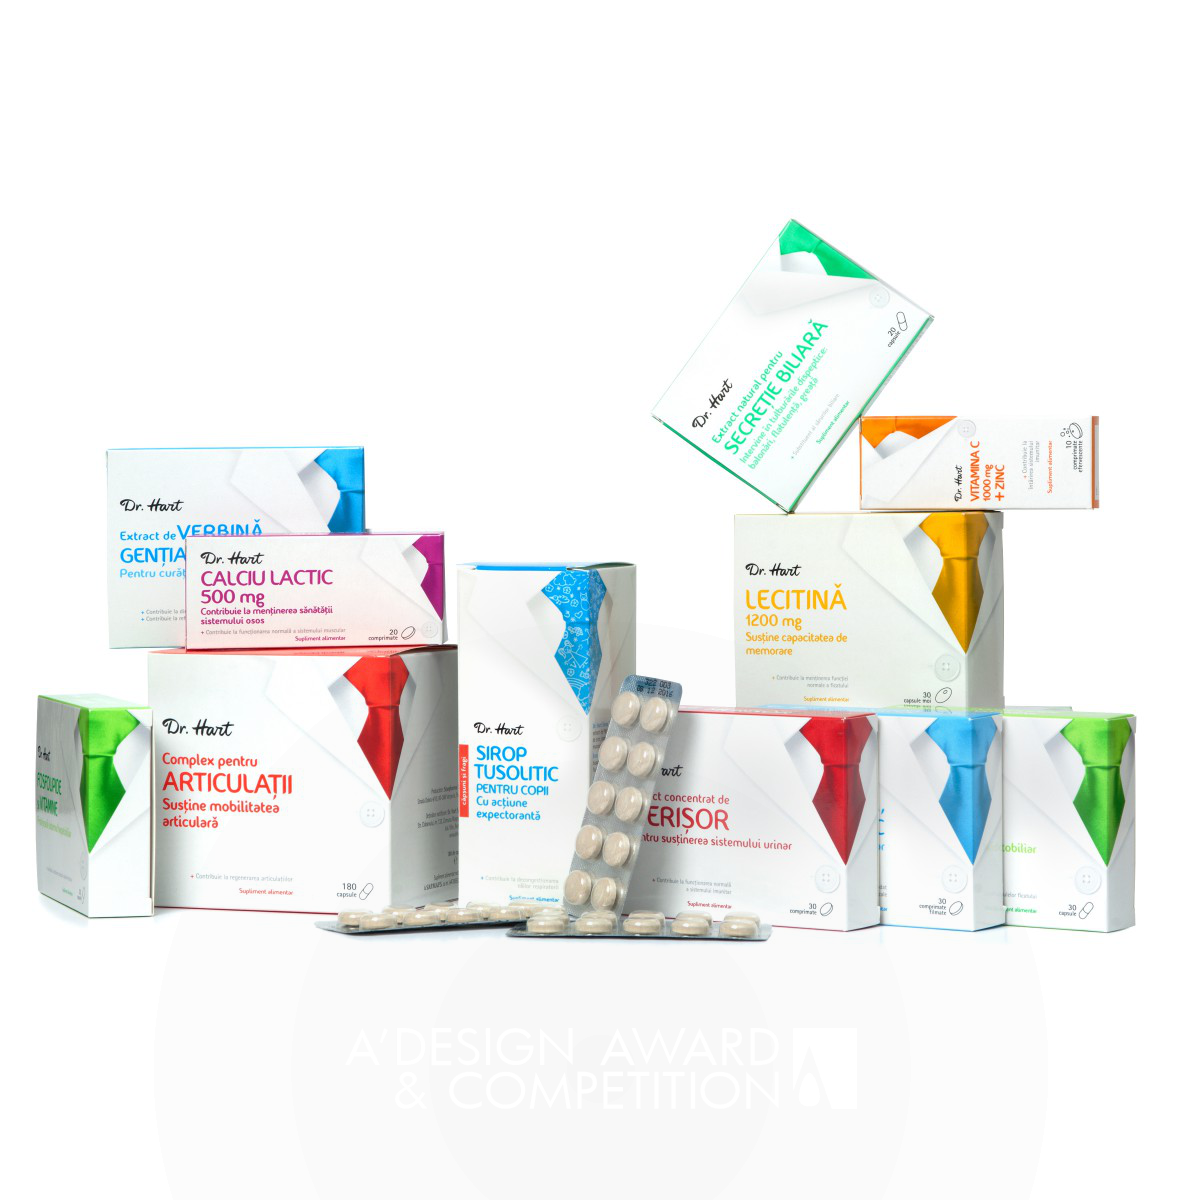 Dr. Hart Medicine packaging by Ampro Design